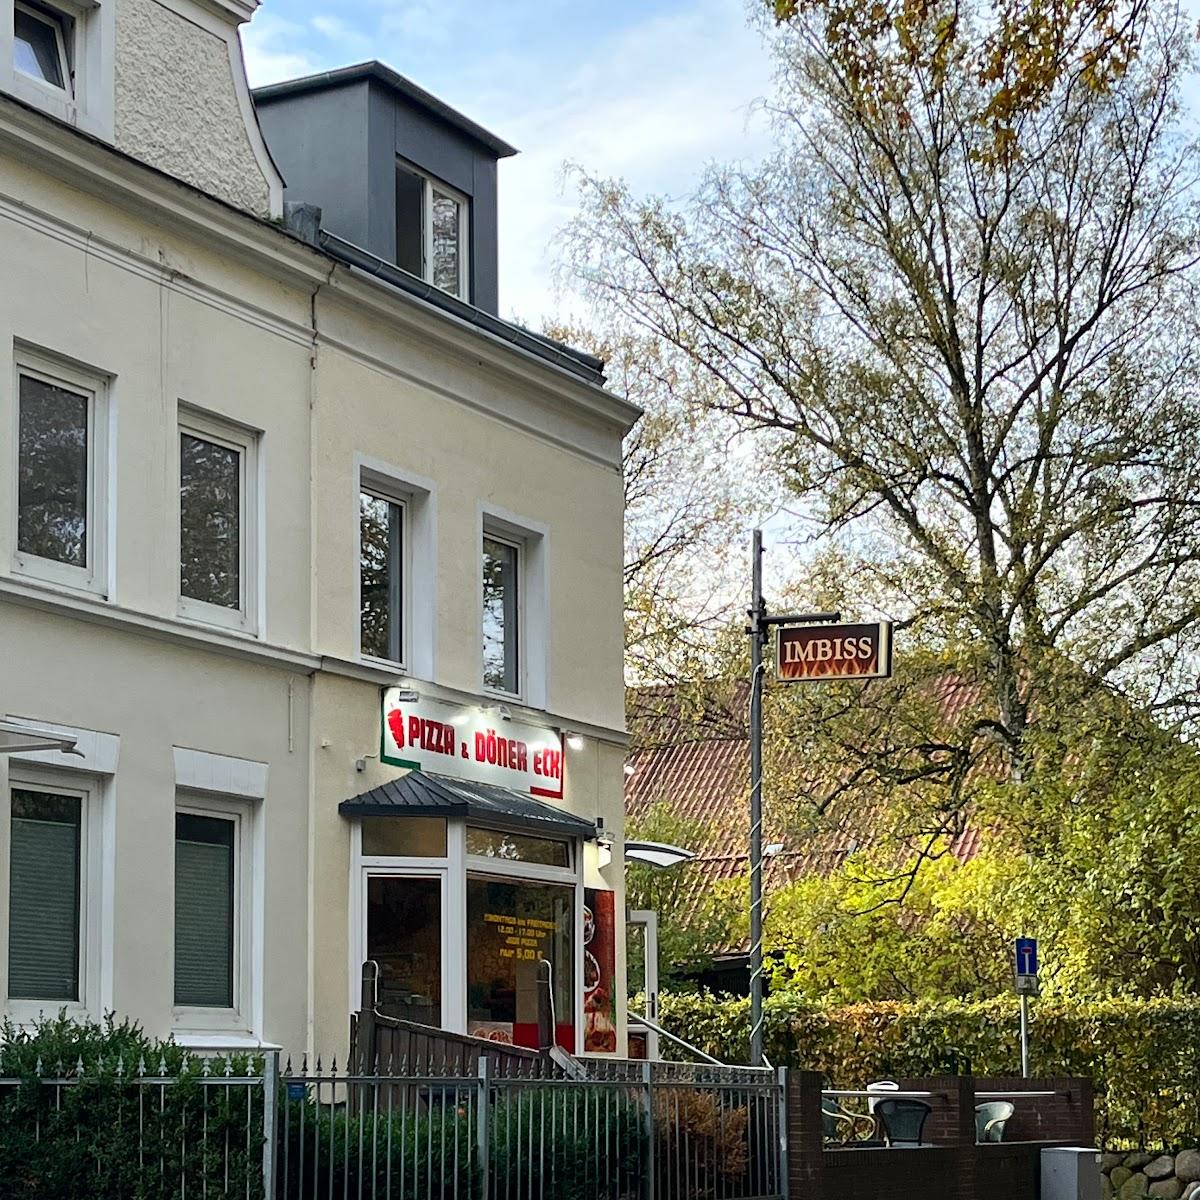 Restaurant "Pizza und Döner Eck" in Lübeck